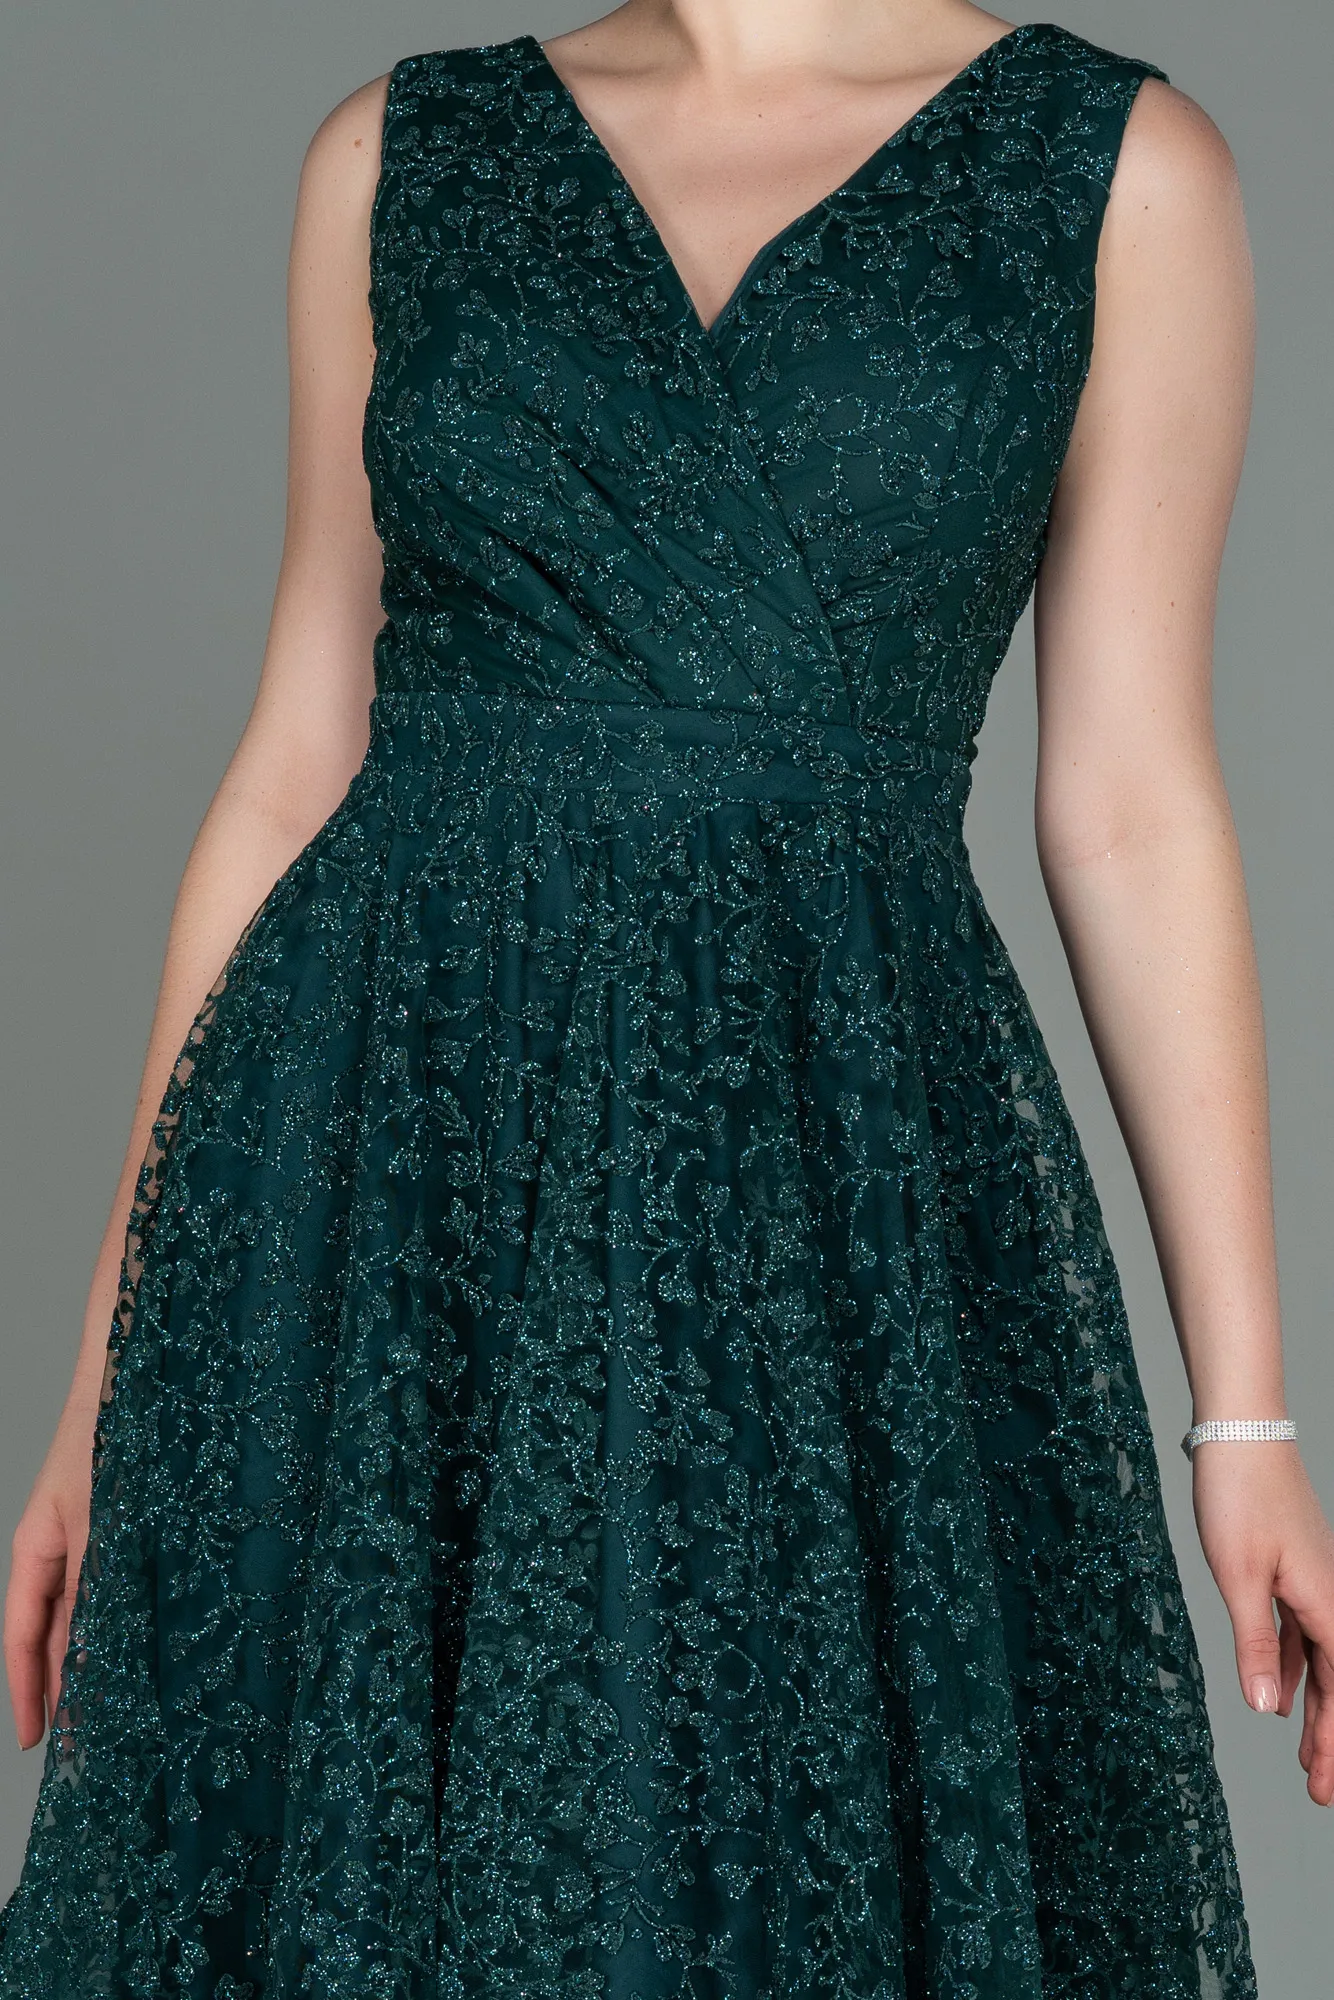 Emerald Green-Midi Night Dress ABK1794